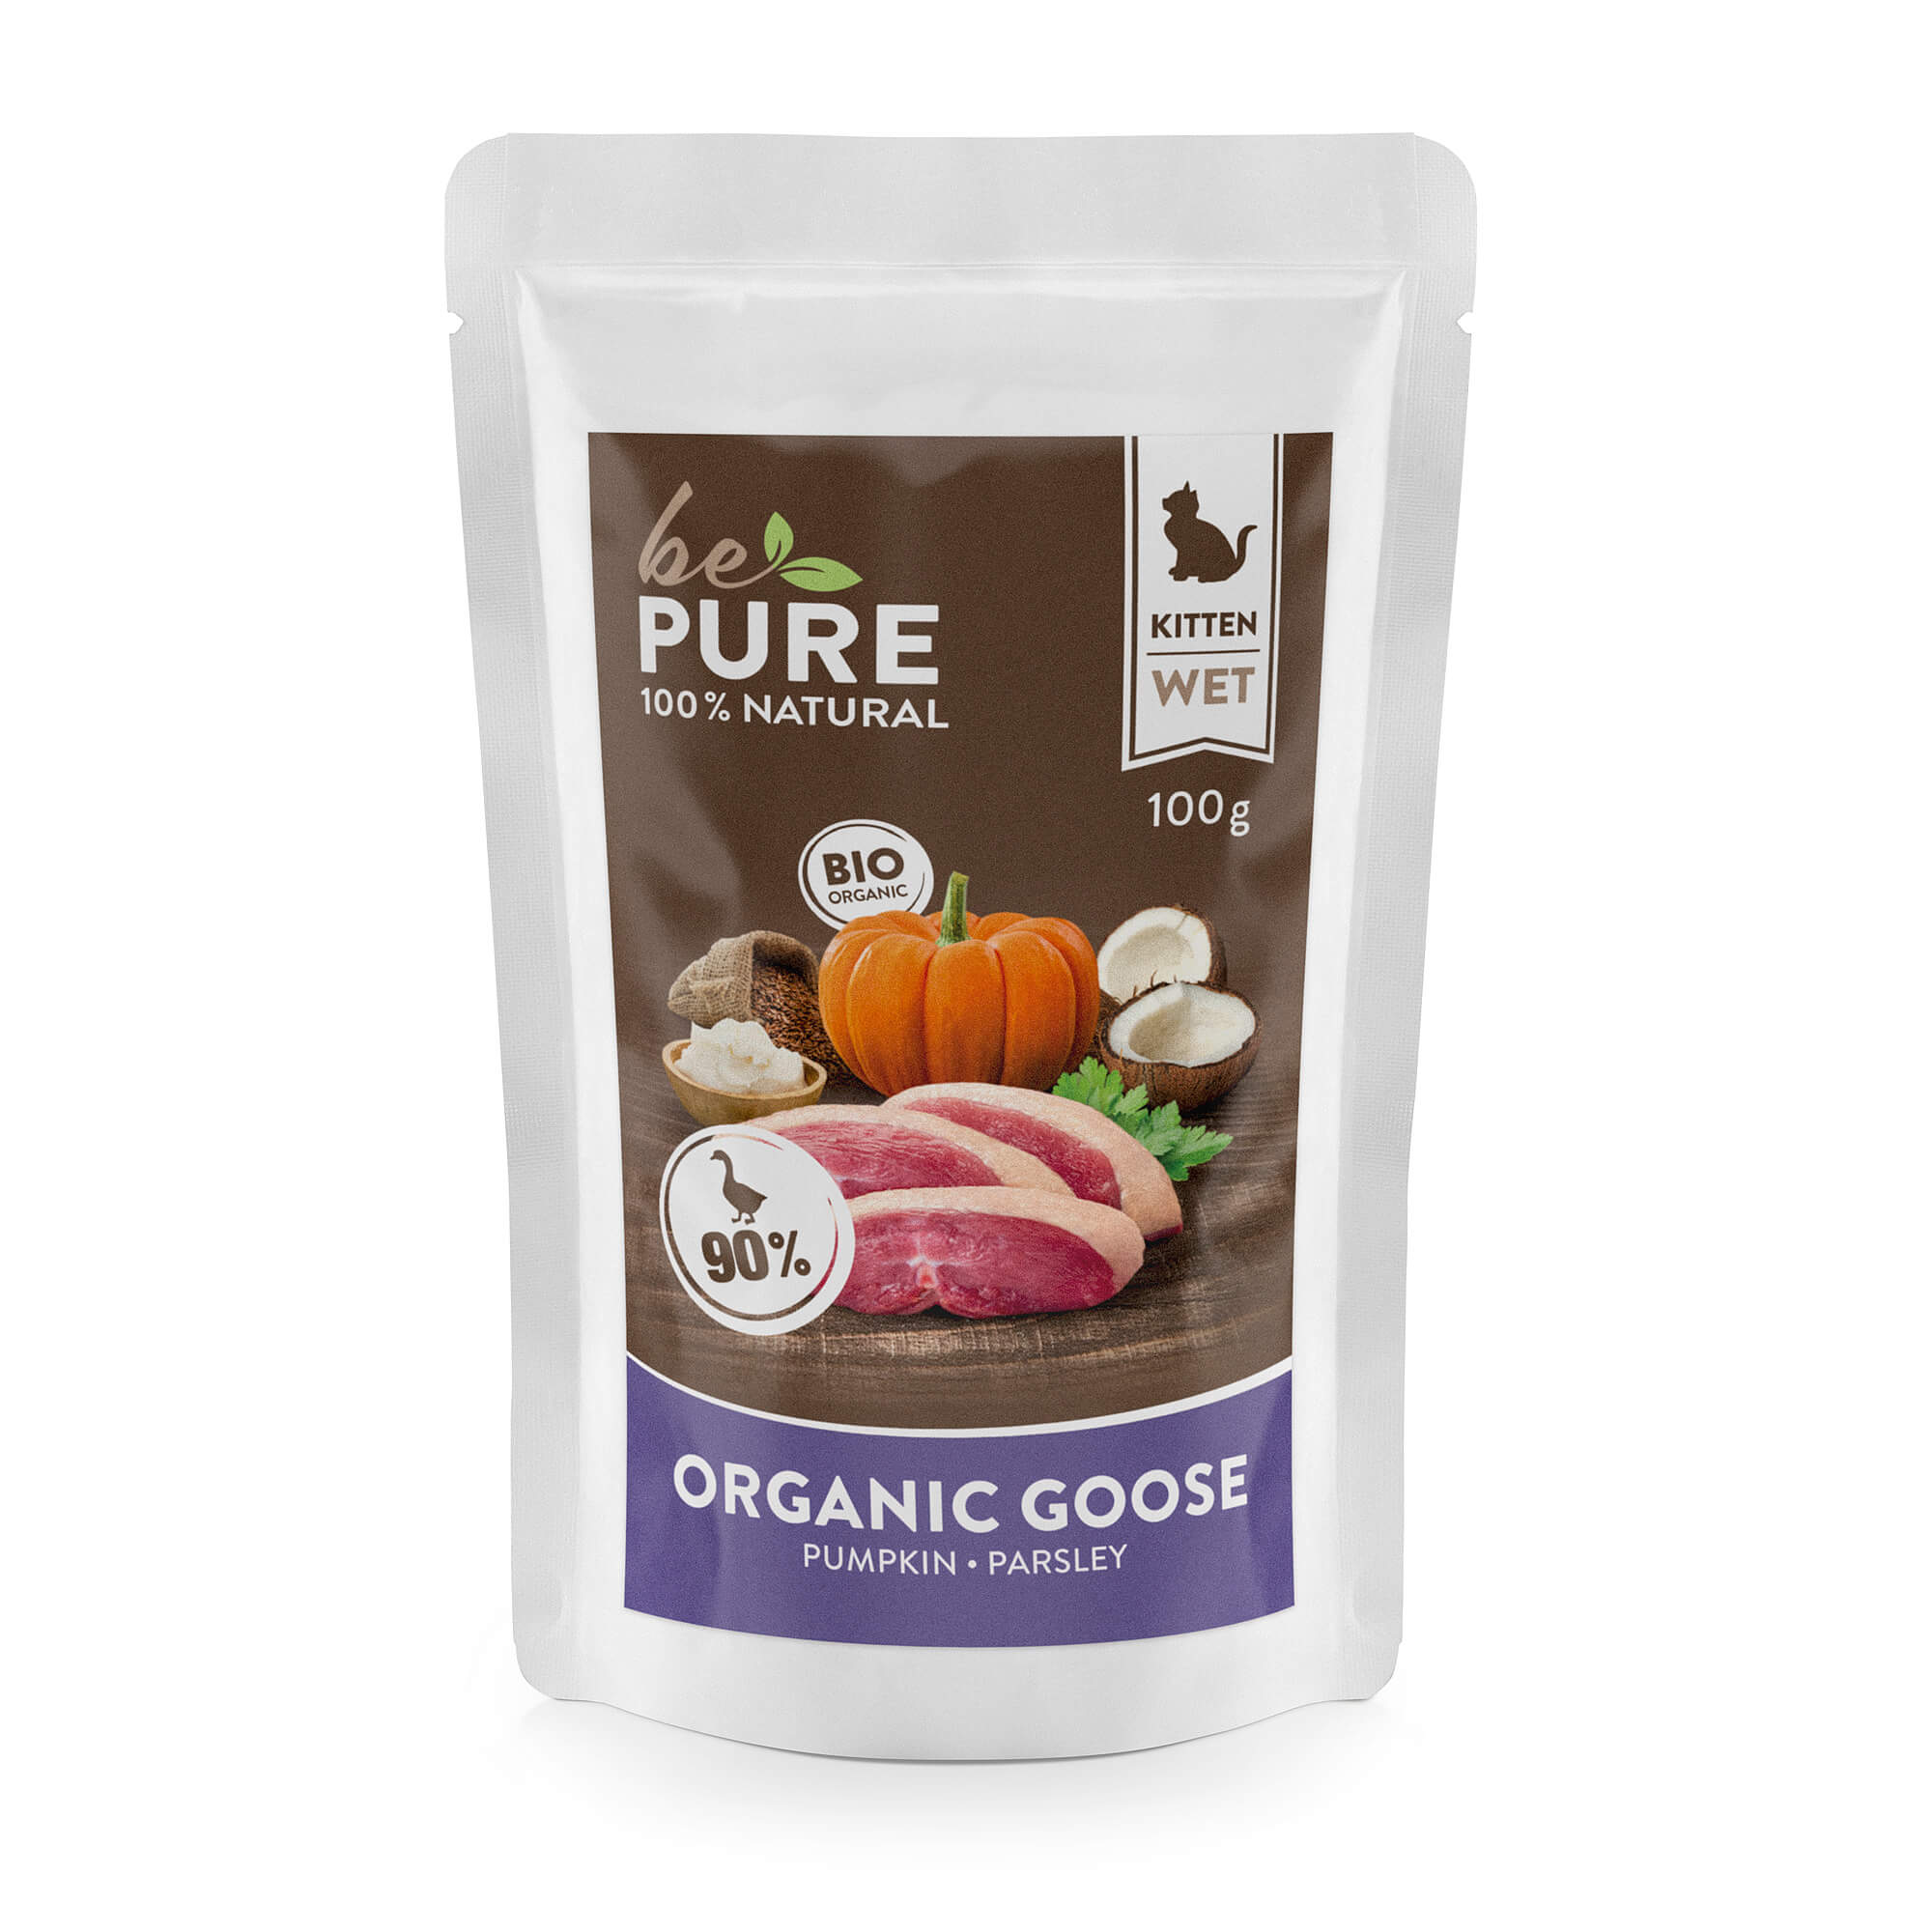 bePure Organic Goose mit Bio Gans und Kürbis für Kitten (100g)